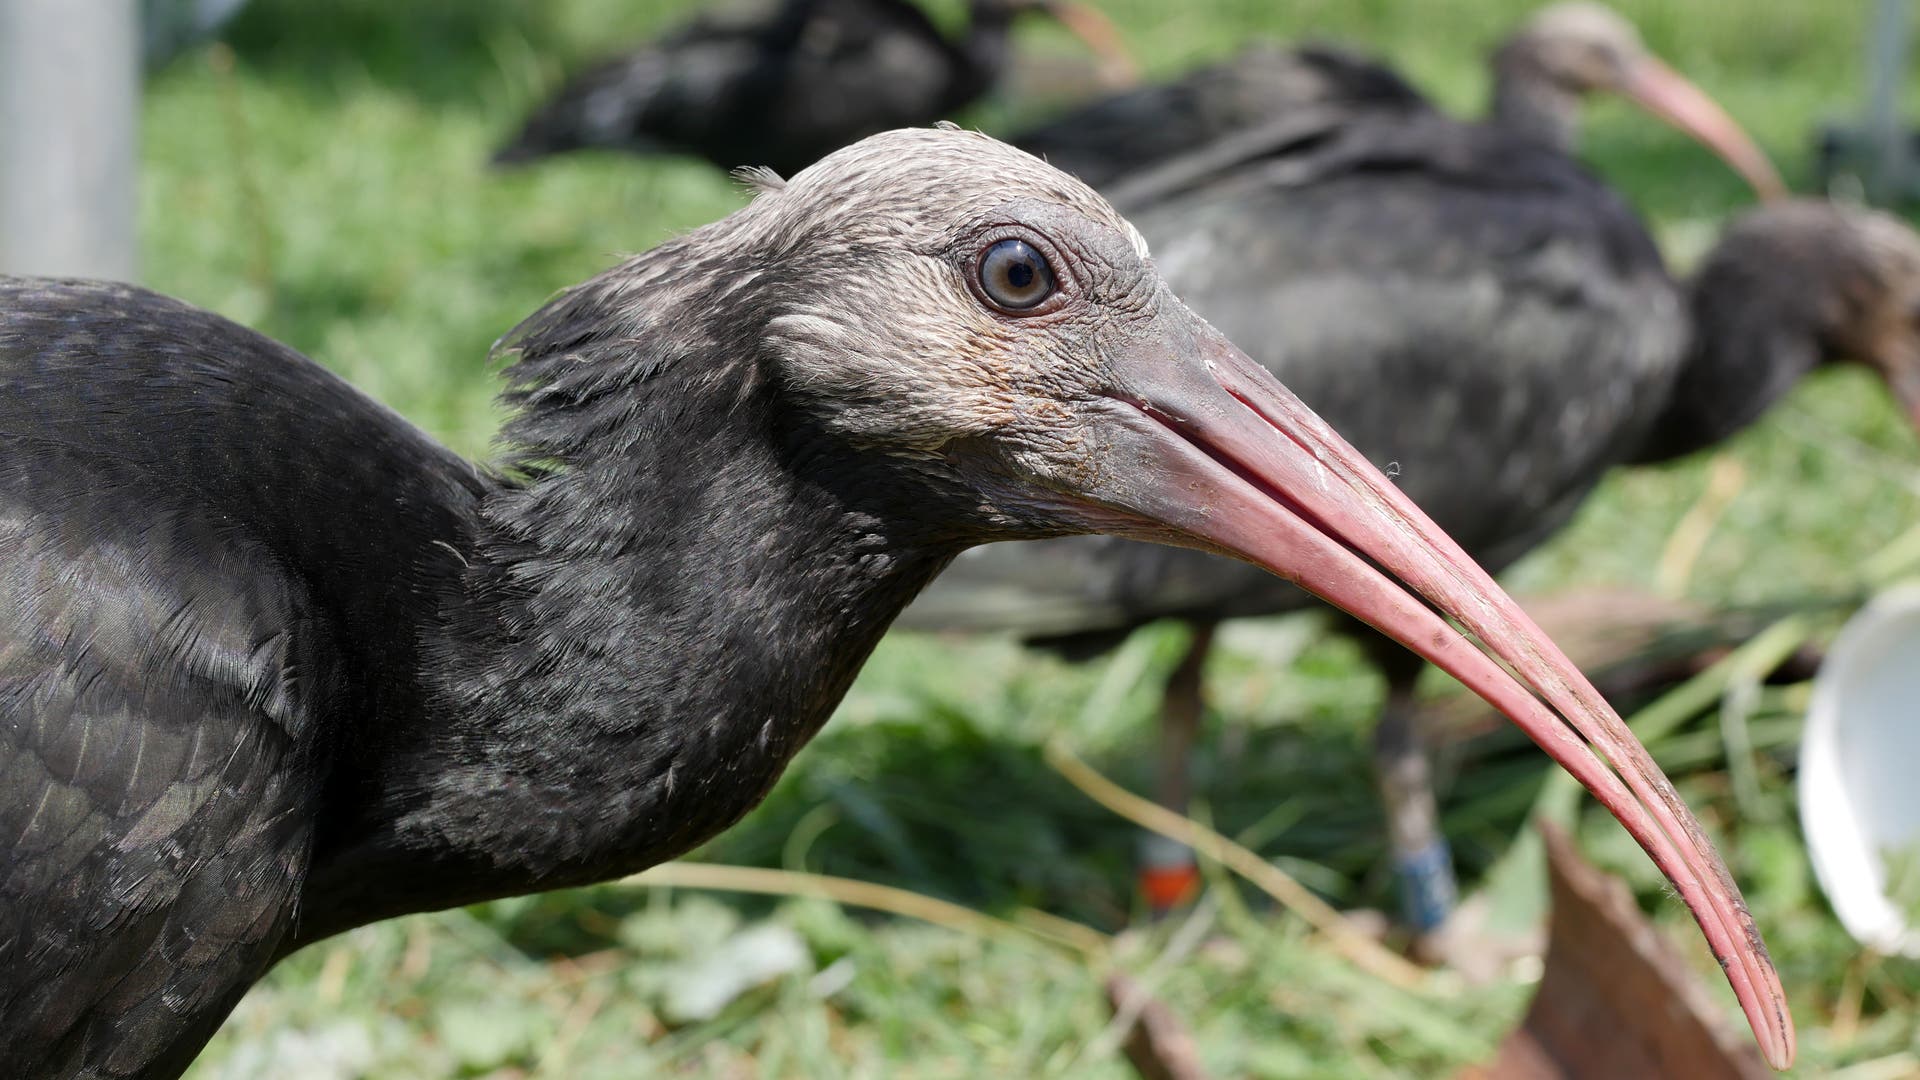 Noordelijke kale ibis: Geleerd om te overleven dankzij menselijke pleegmoeders